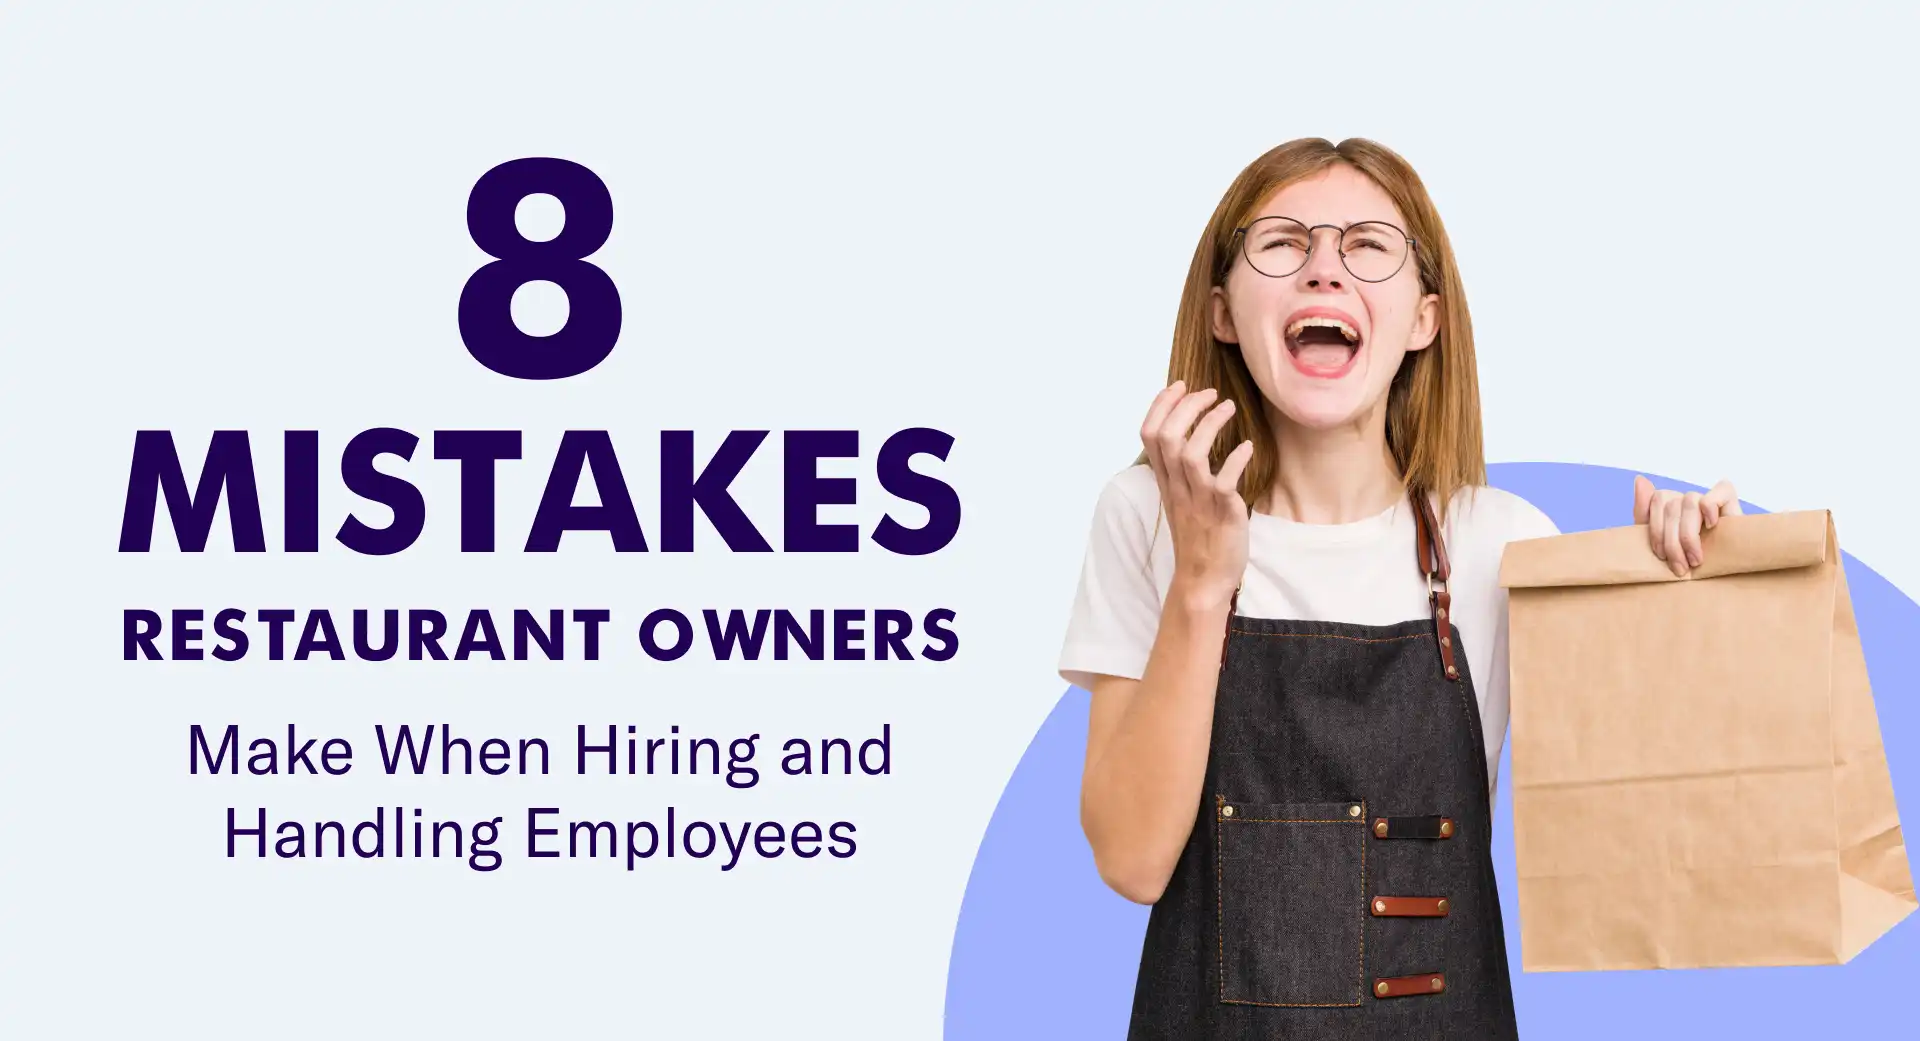 Melhor maneira de contratar funcionários de restaurantes: 8 erros a evitar